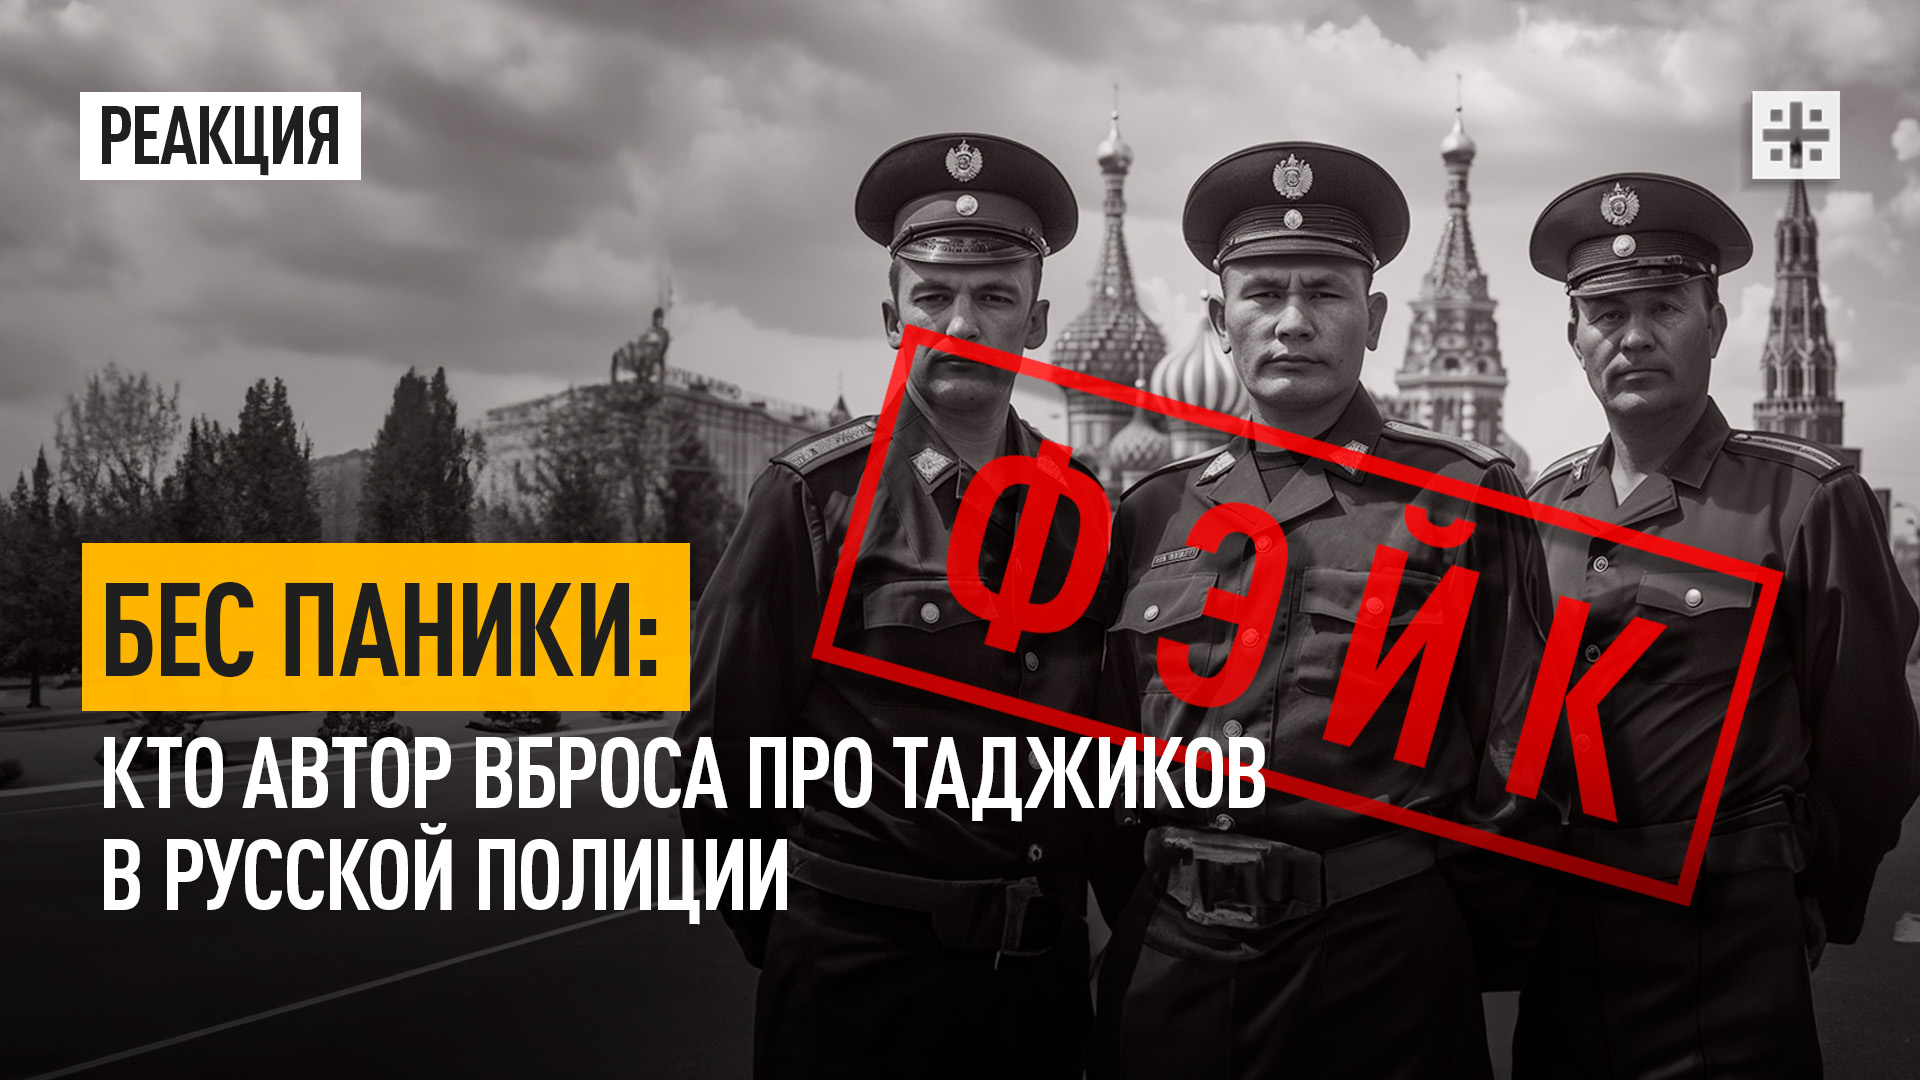 Бес паники: Кто автор вброса про таджиков в русской полиции